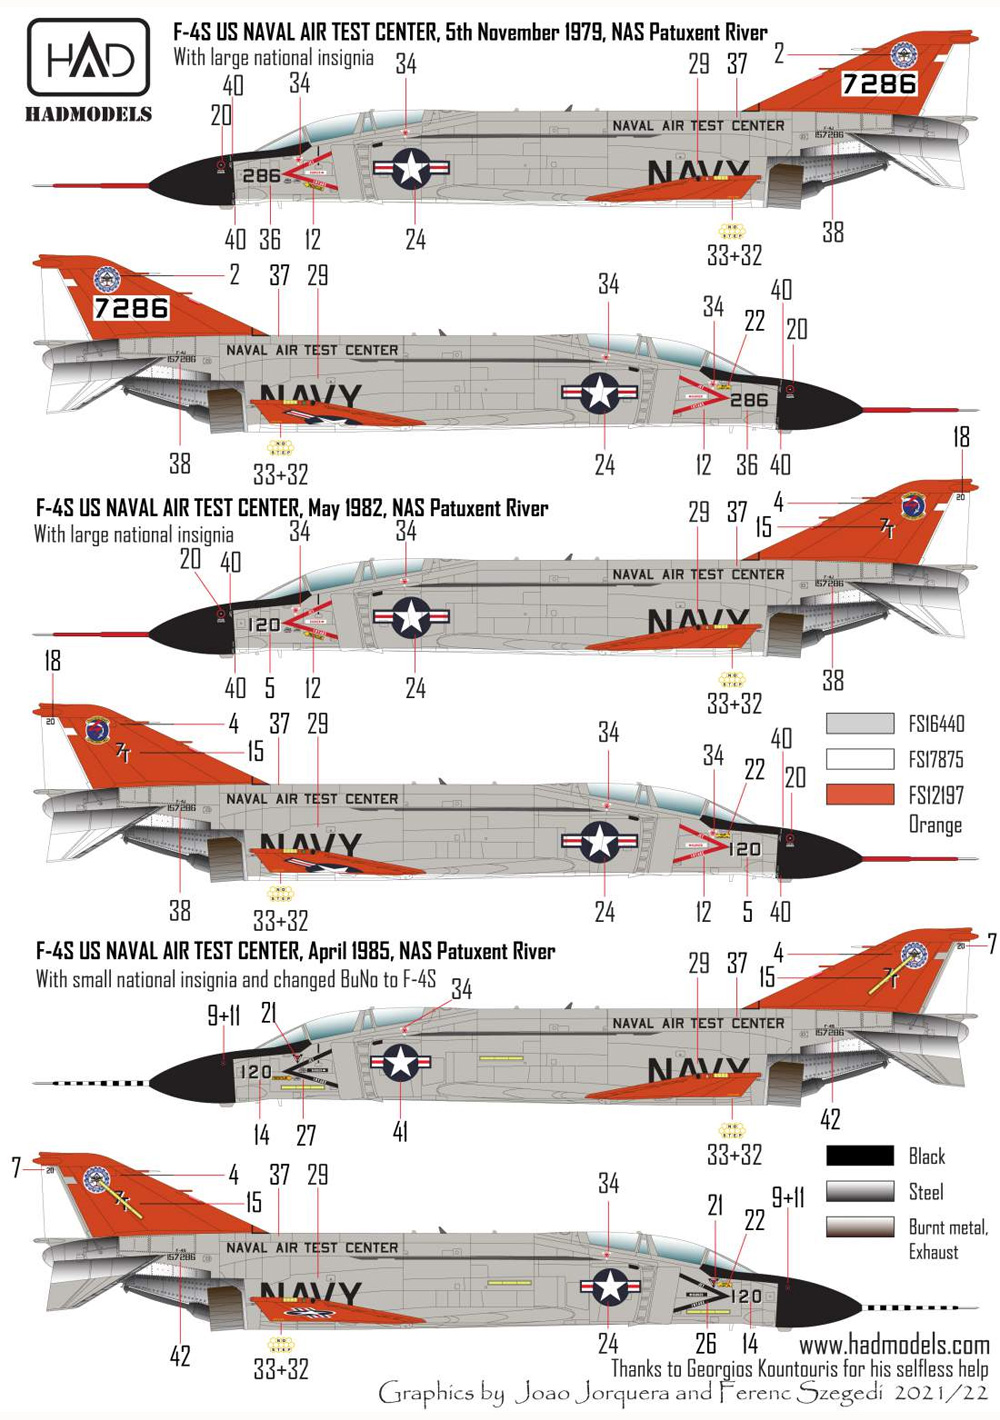 F-4S/J ファントム 2 海軍航空試験センター ファイナル・カウントダウン デカール デカール (HAD MODELS 1/48 デカール No.48255) 商品画像_3